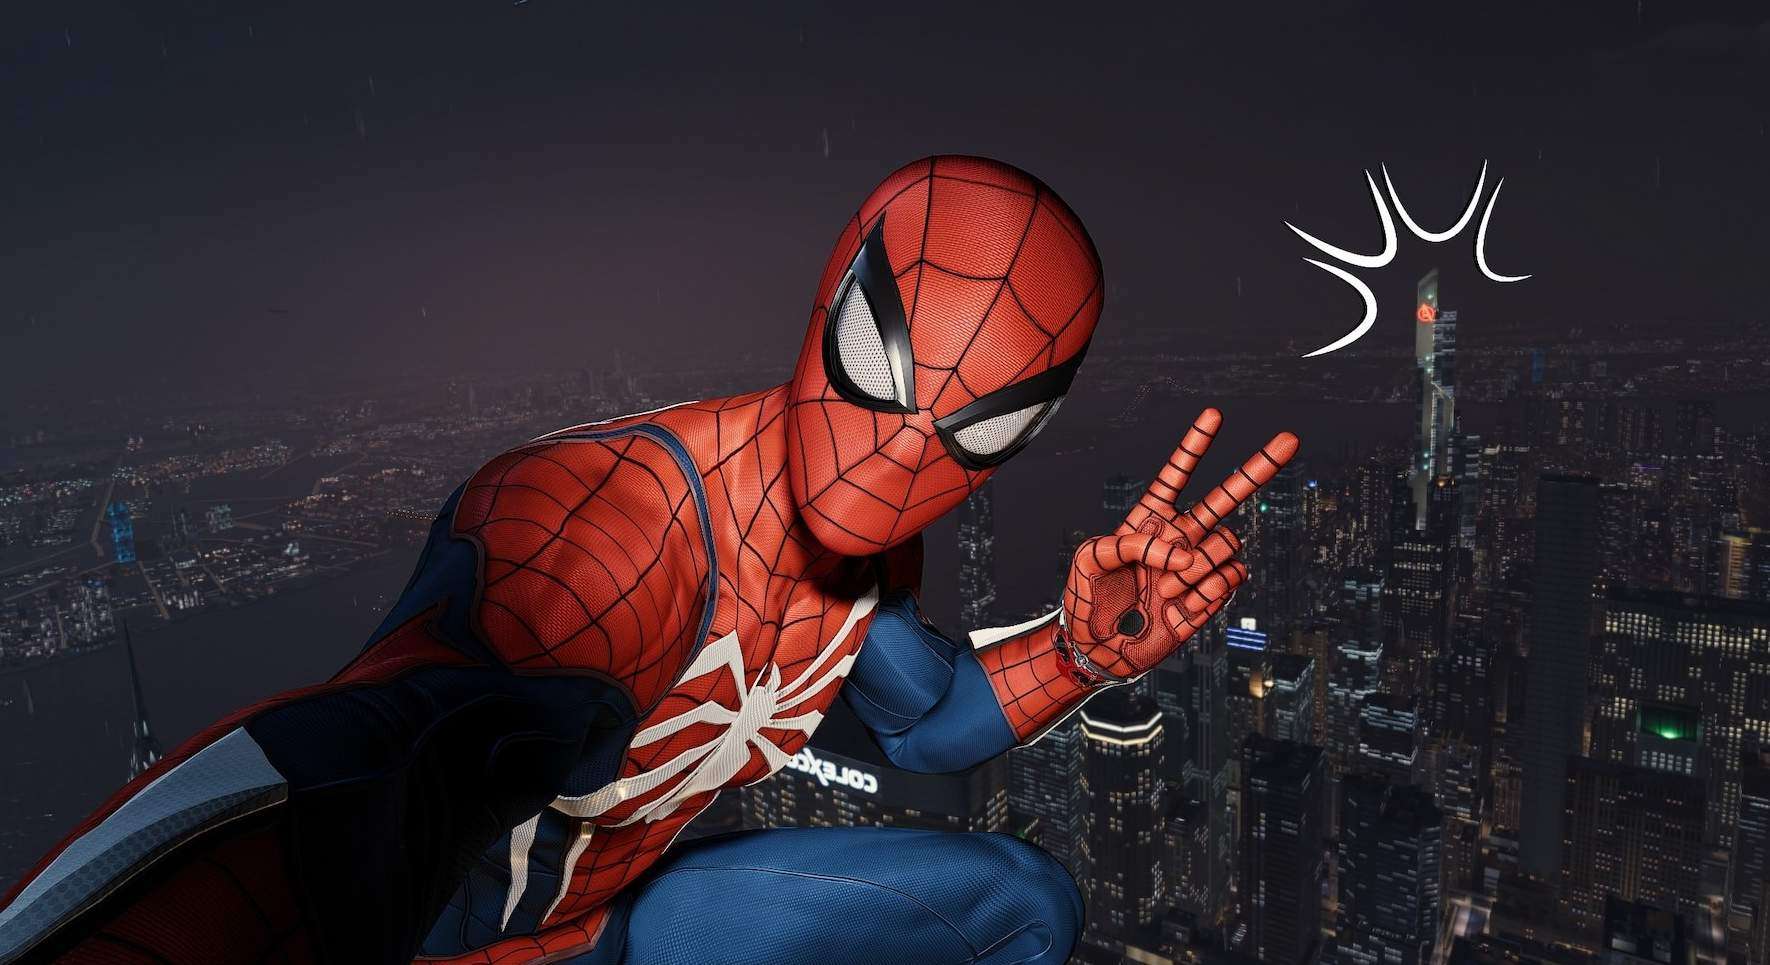 Marvel's Spider-Man Remastered - Remastered DLC Trophy Guide